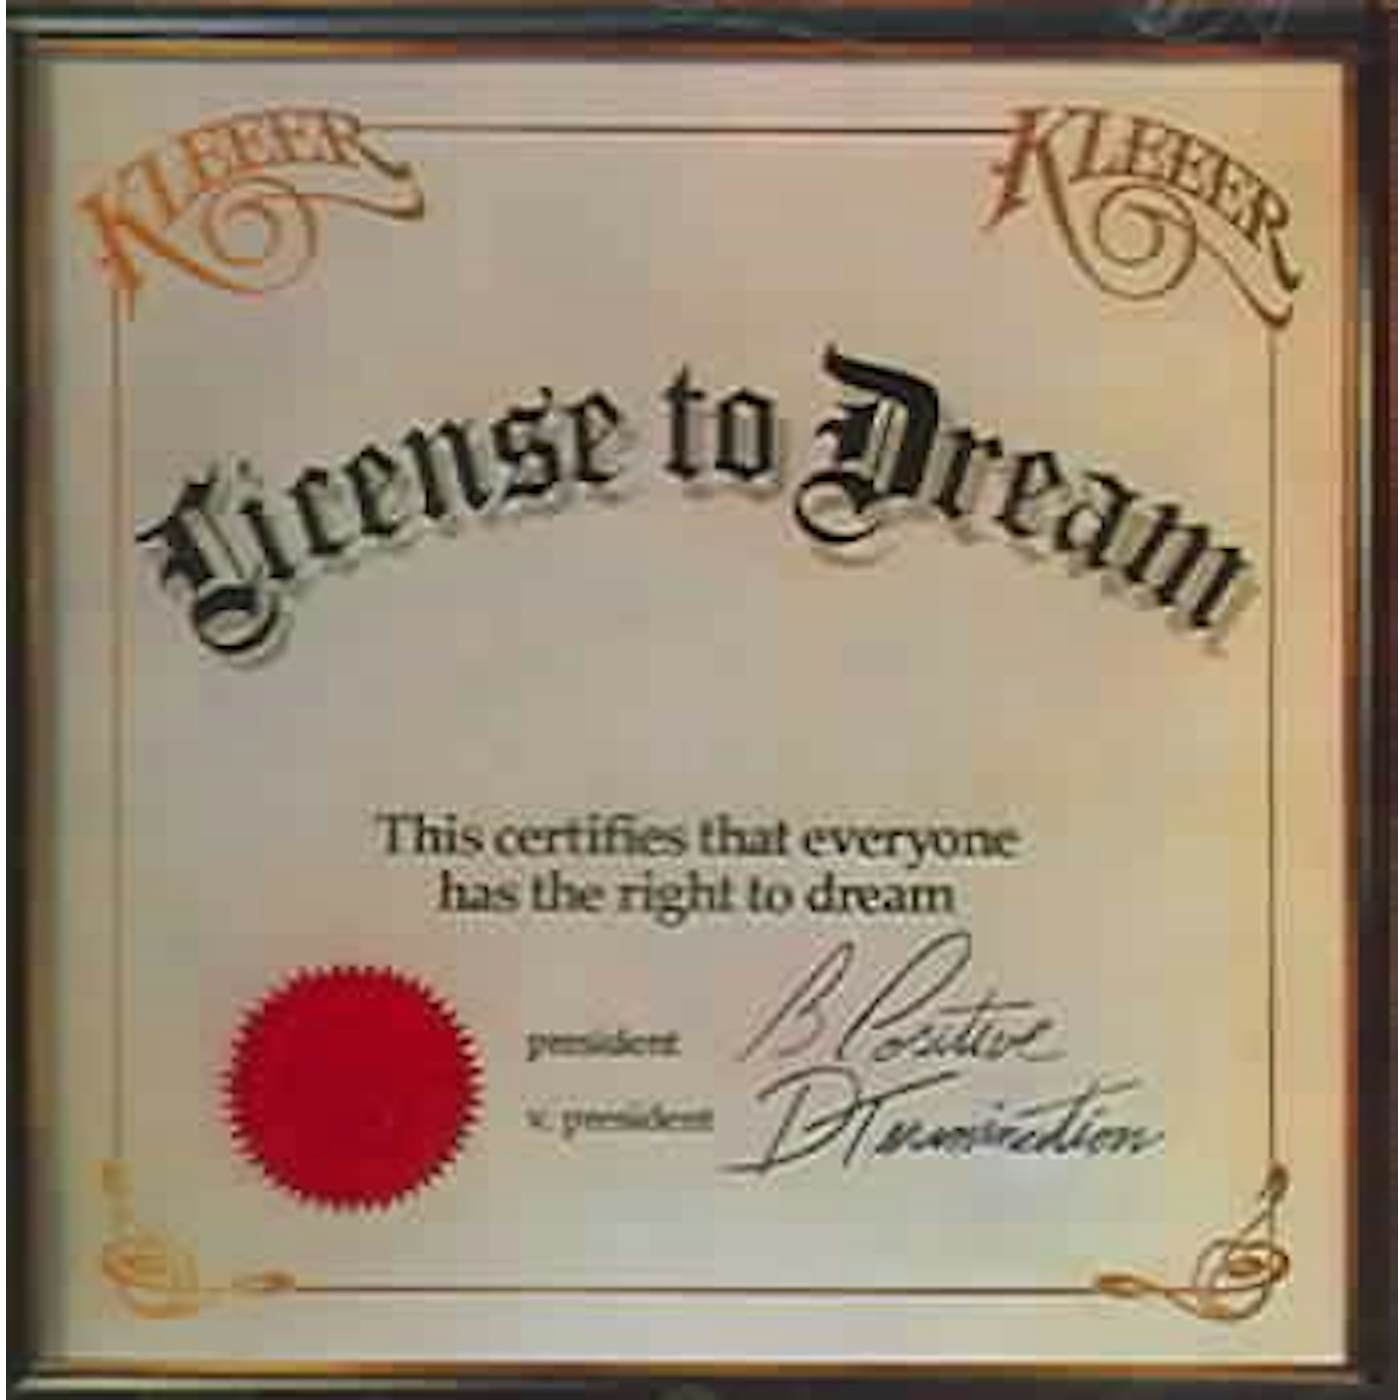 Kleeer License Dream CD